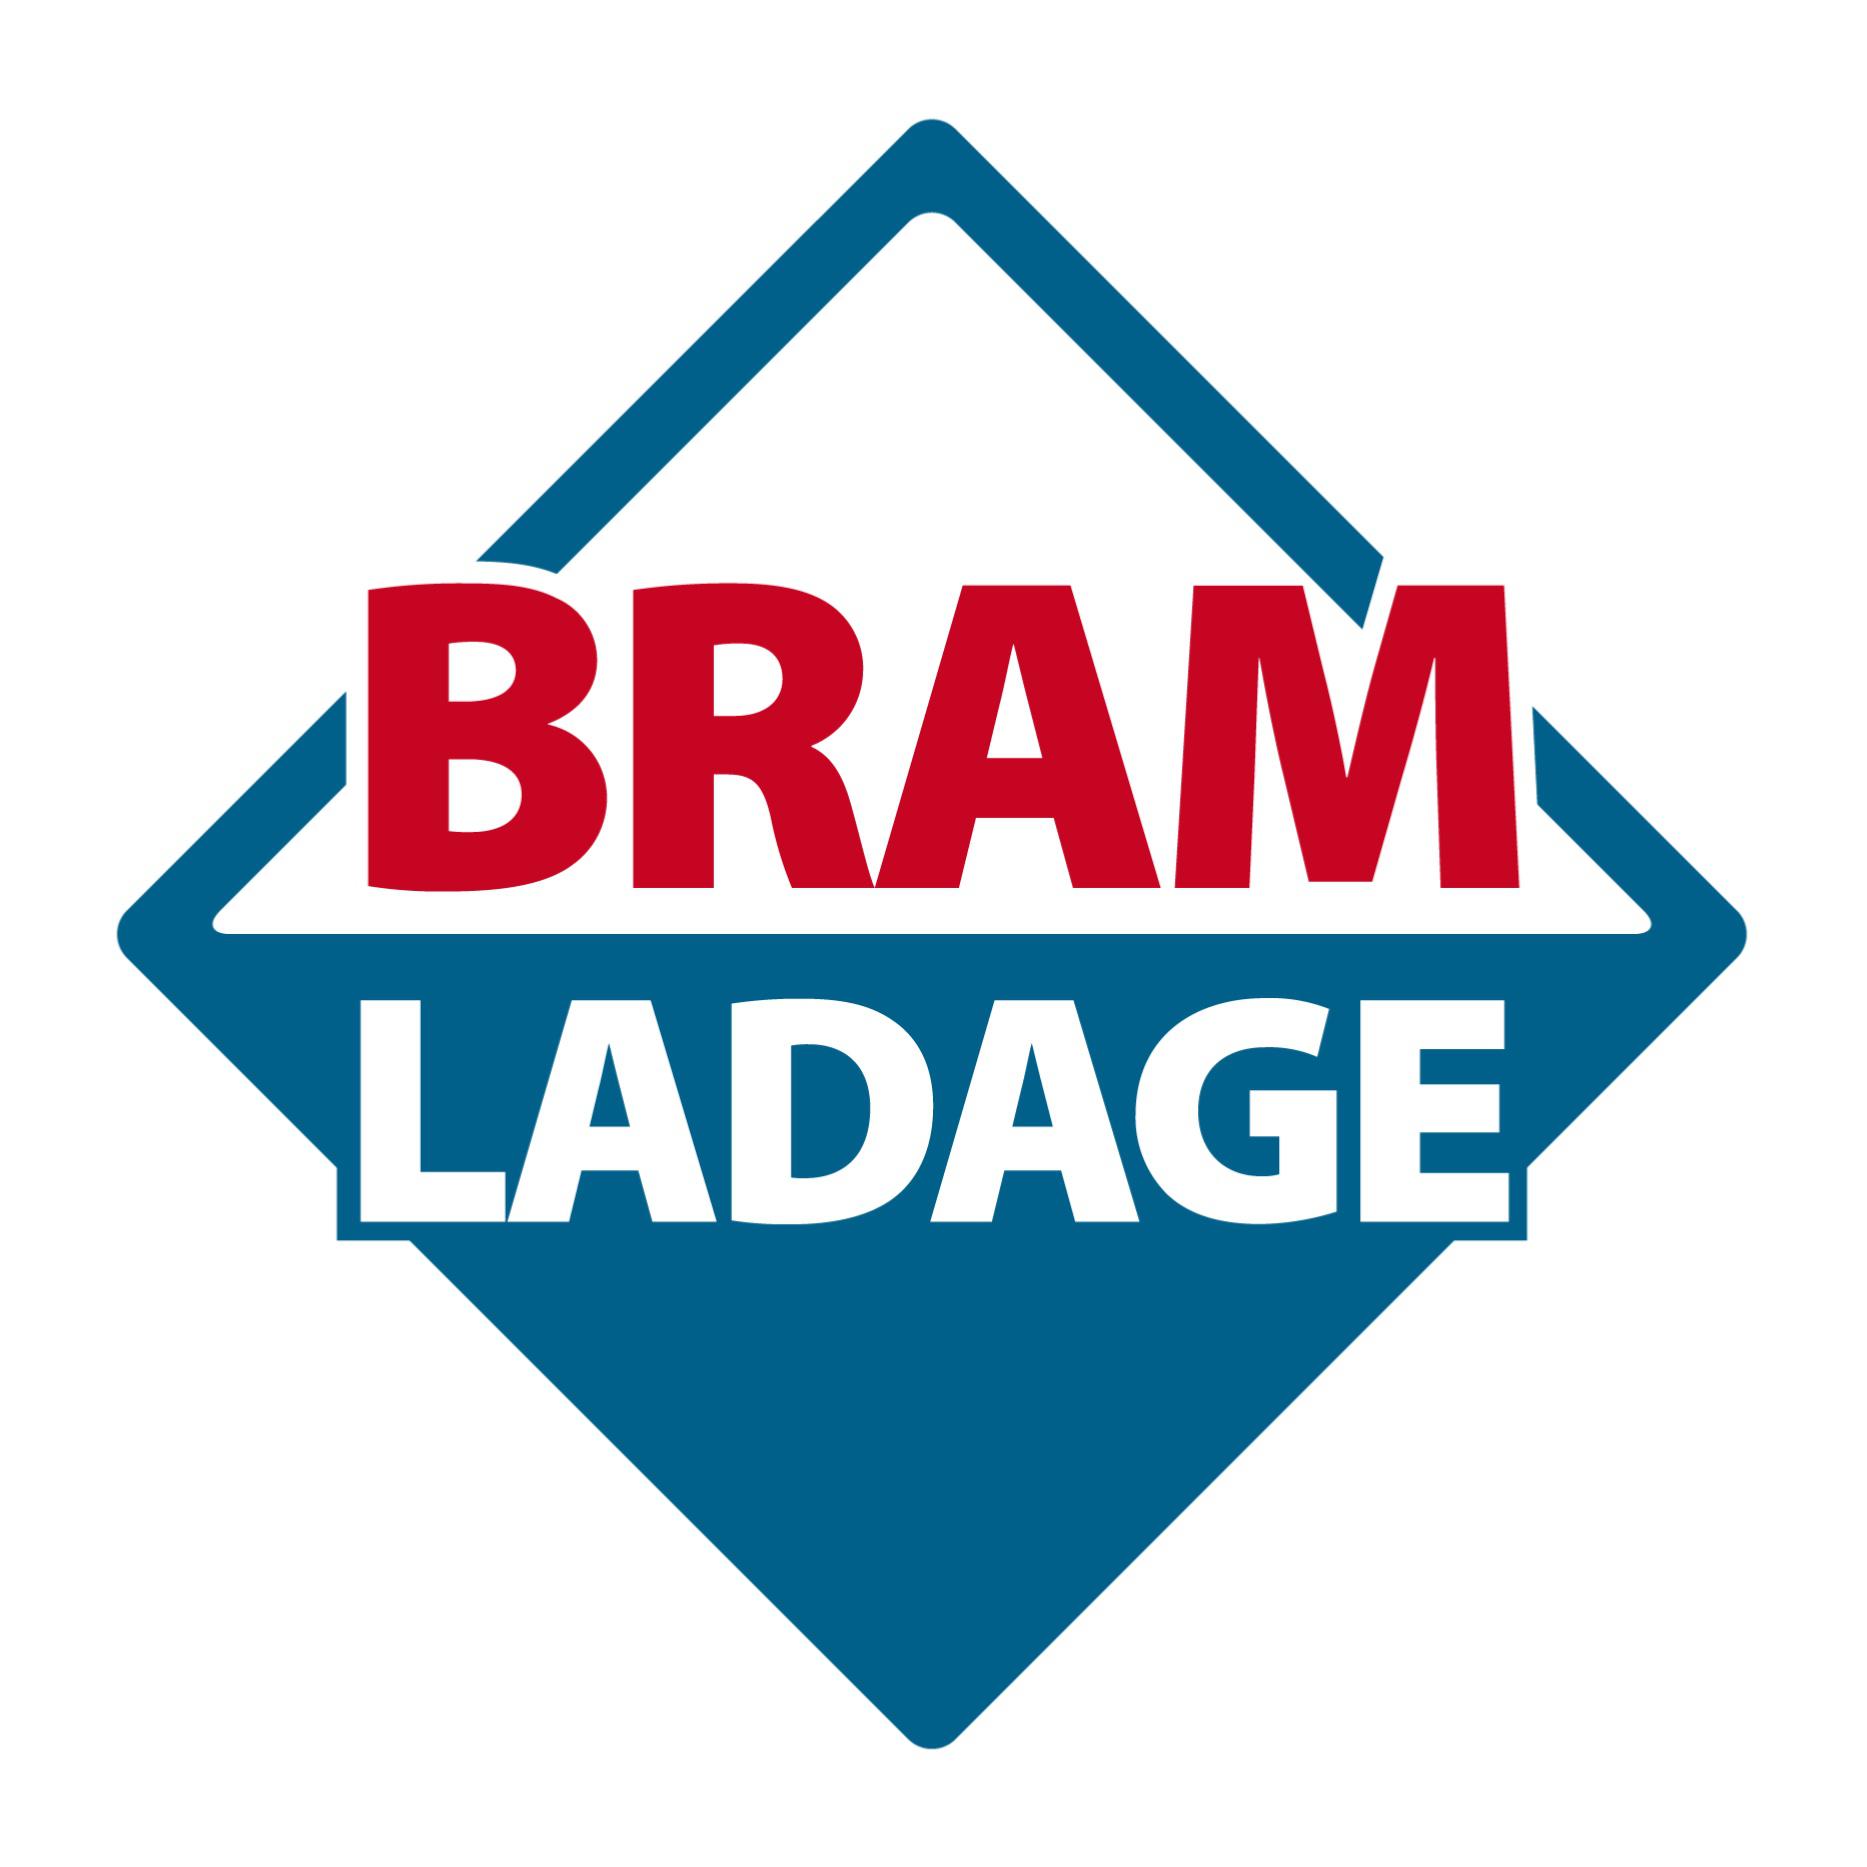 Bram Ladage in Bochum - Logo